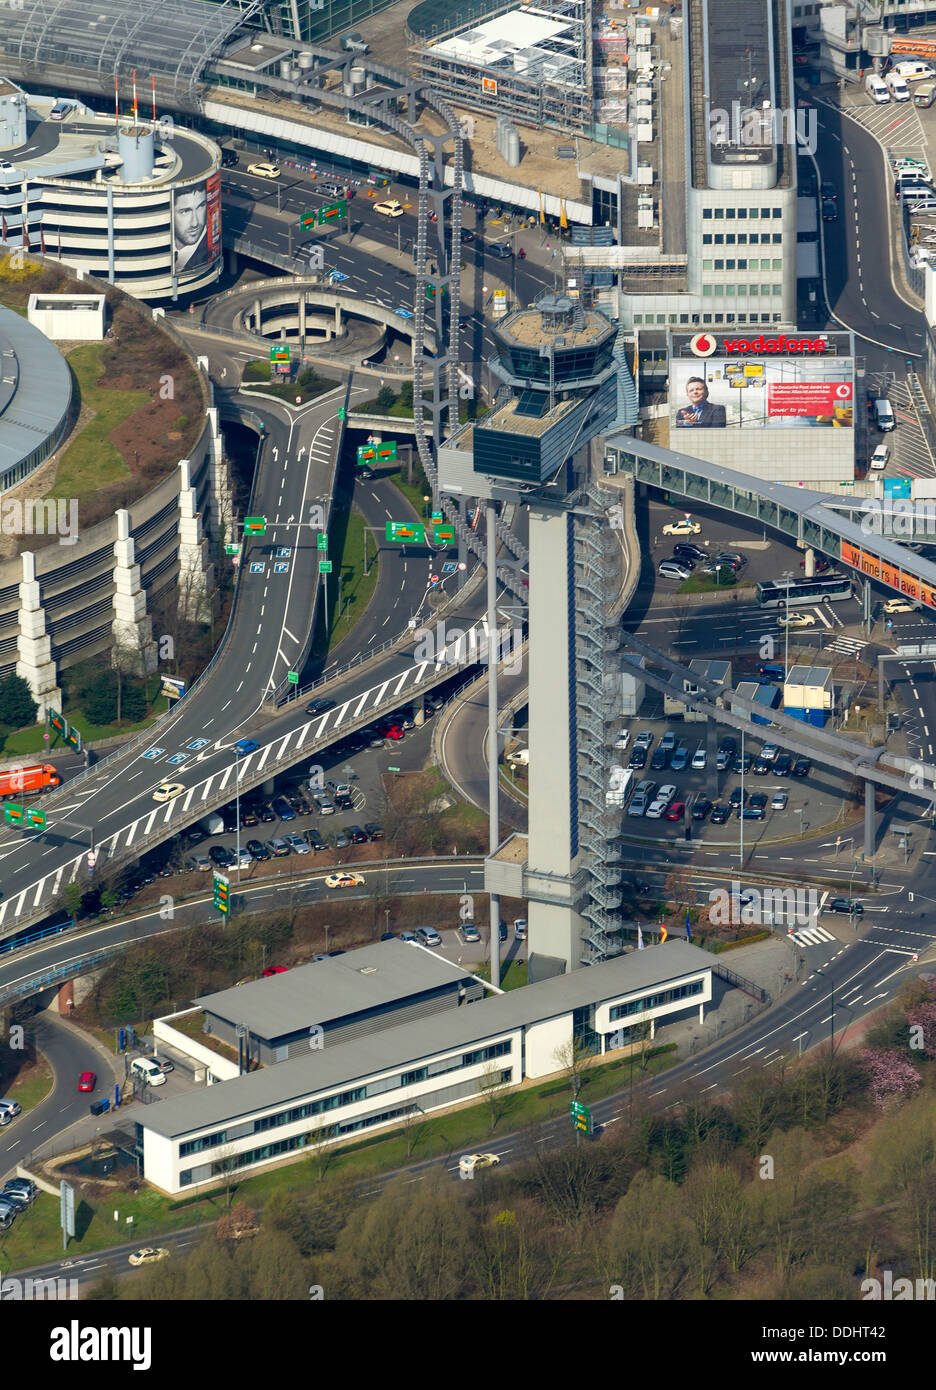 El aeropuerto de Düsseldorf, la torre de control del tráfico aéreo, vista aérea Foto de stock